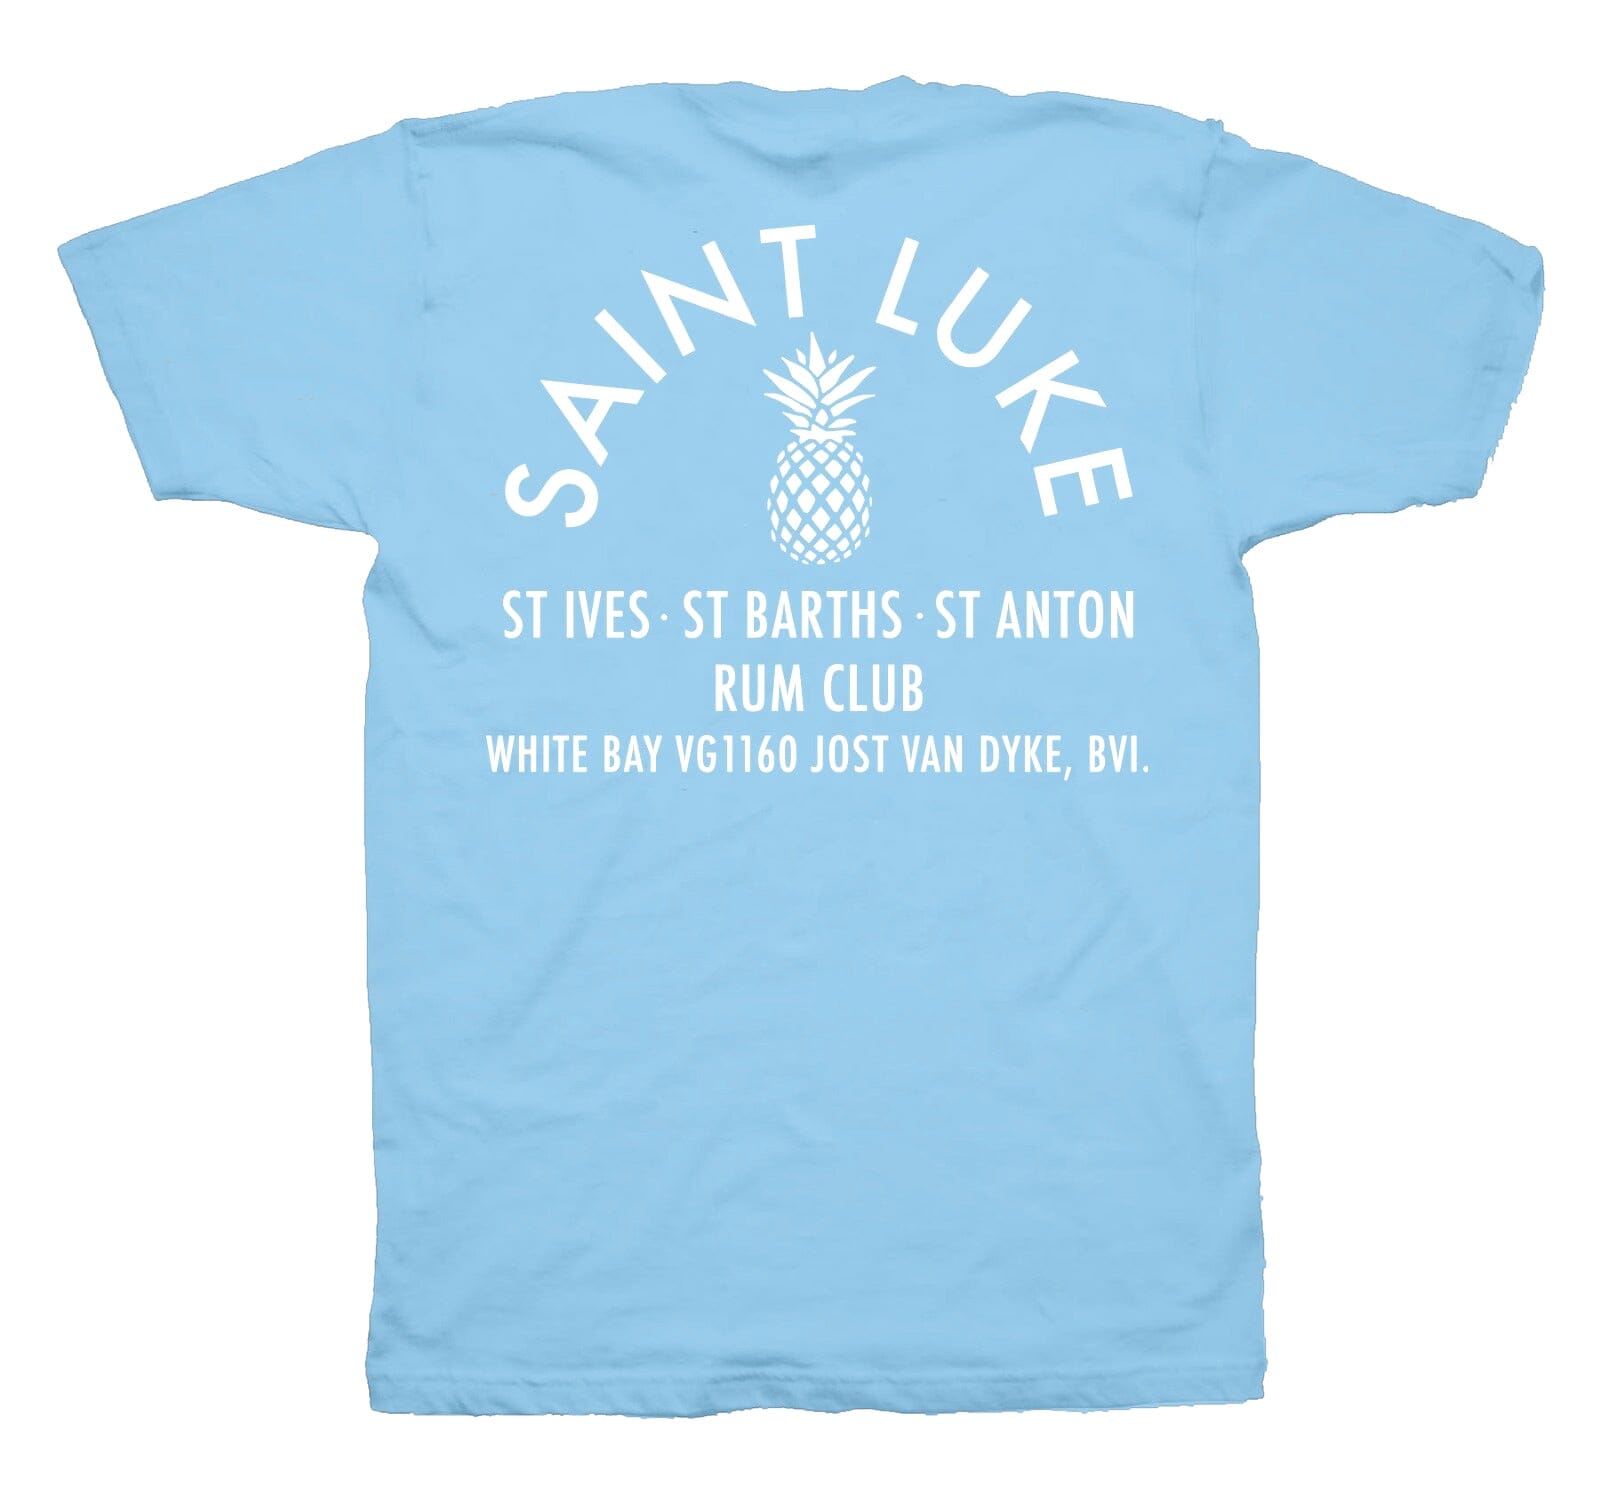 Saint Luke Rum Club T-Shirt in Bleached Out Blue